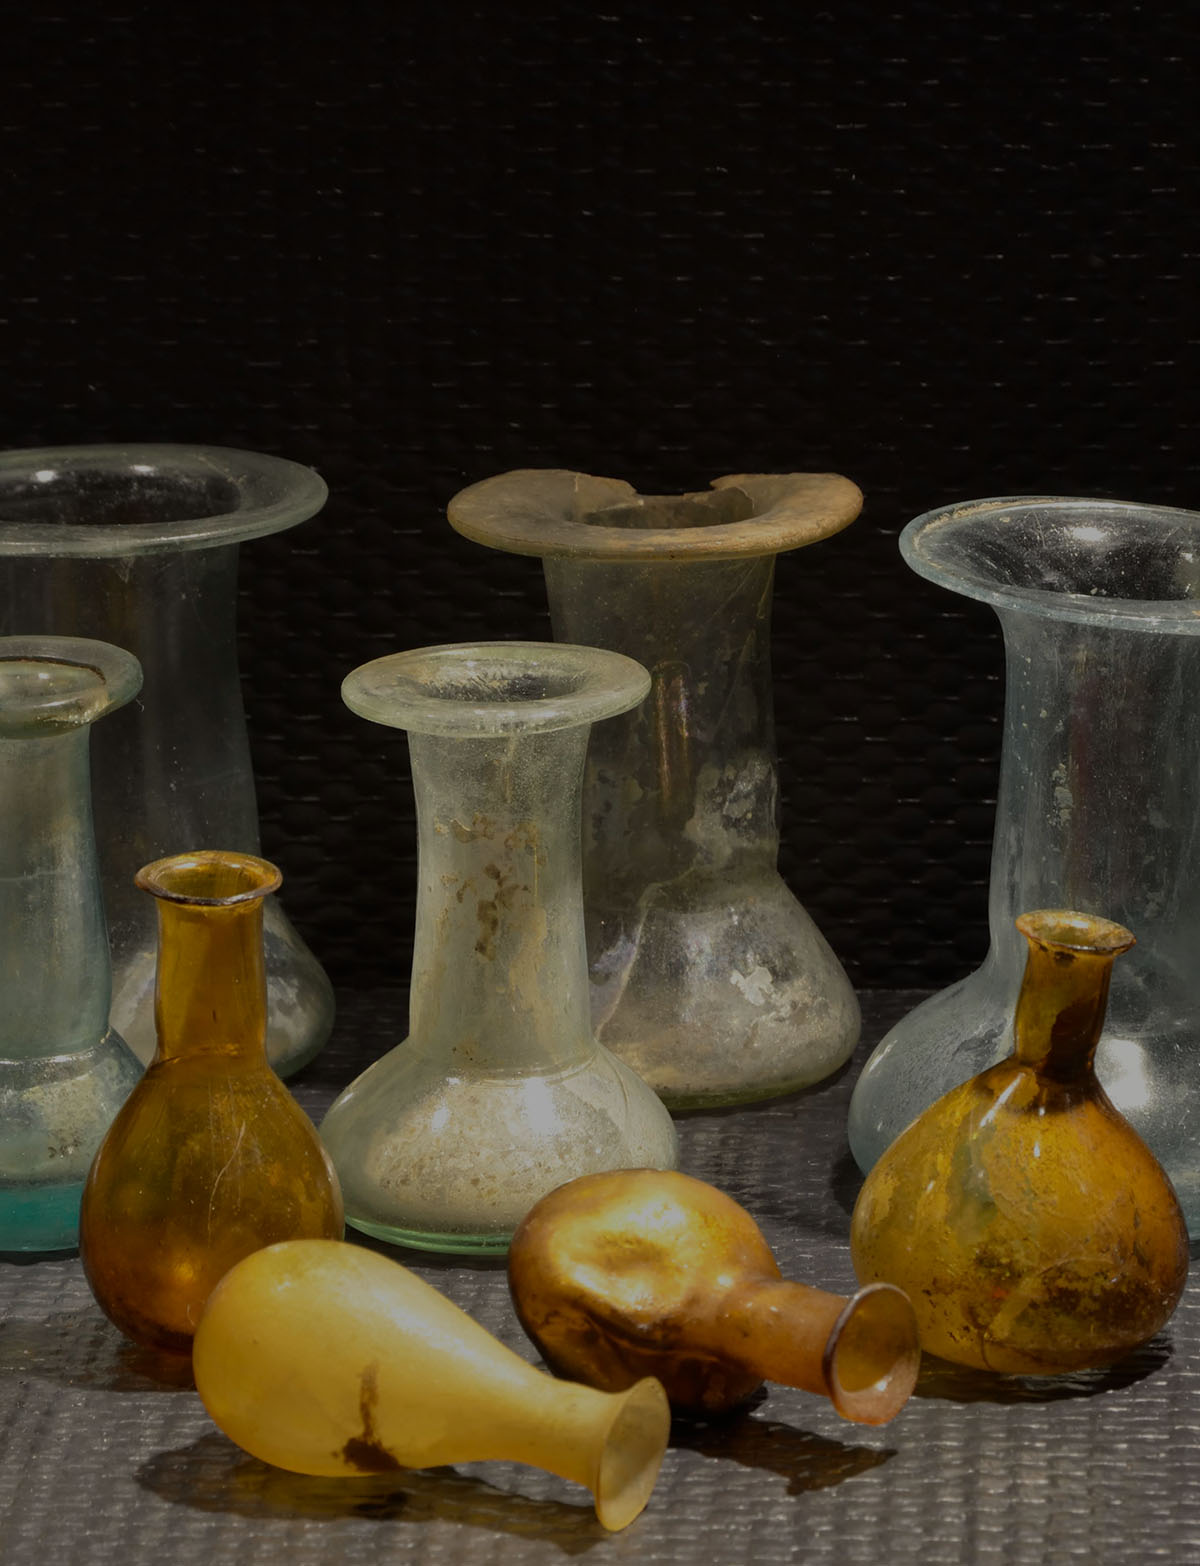 Glass balsam containter - Francesco di Toppo
Di Toppo Collection